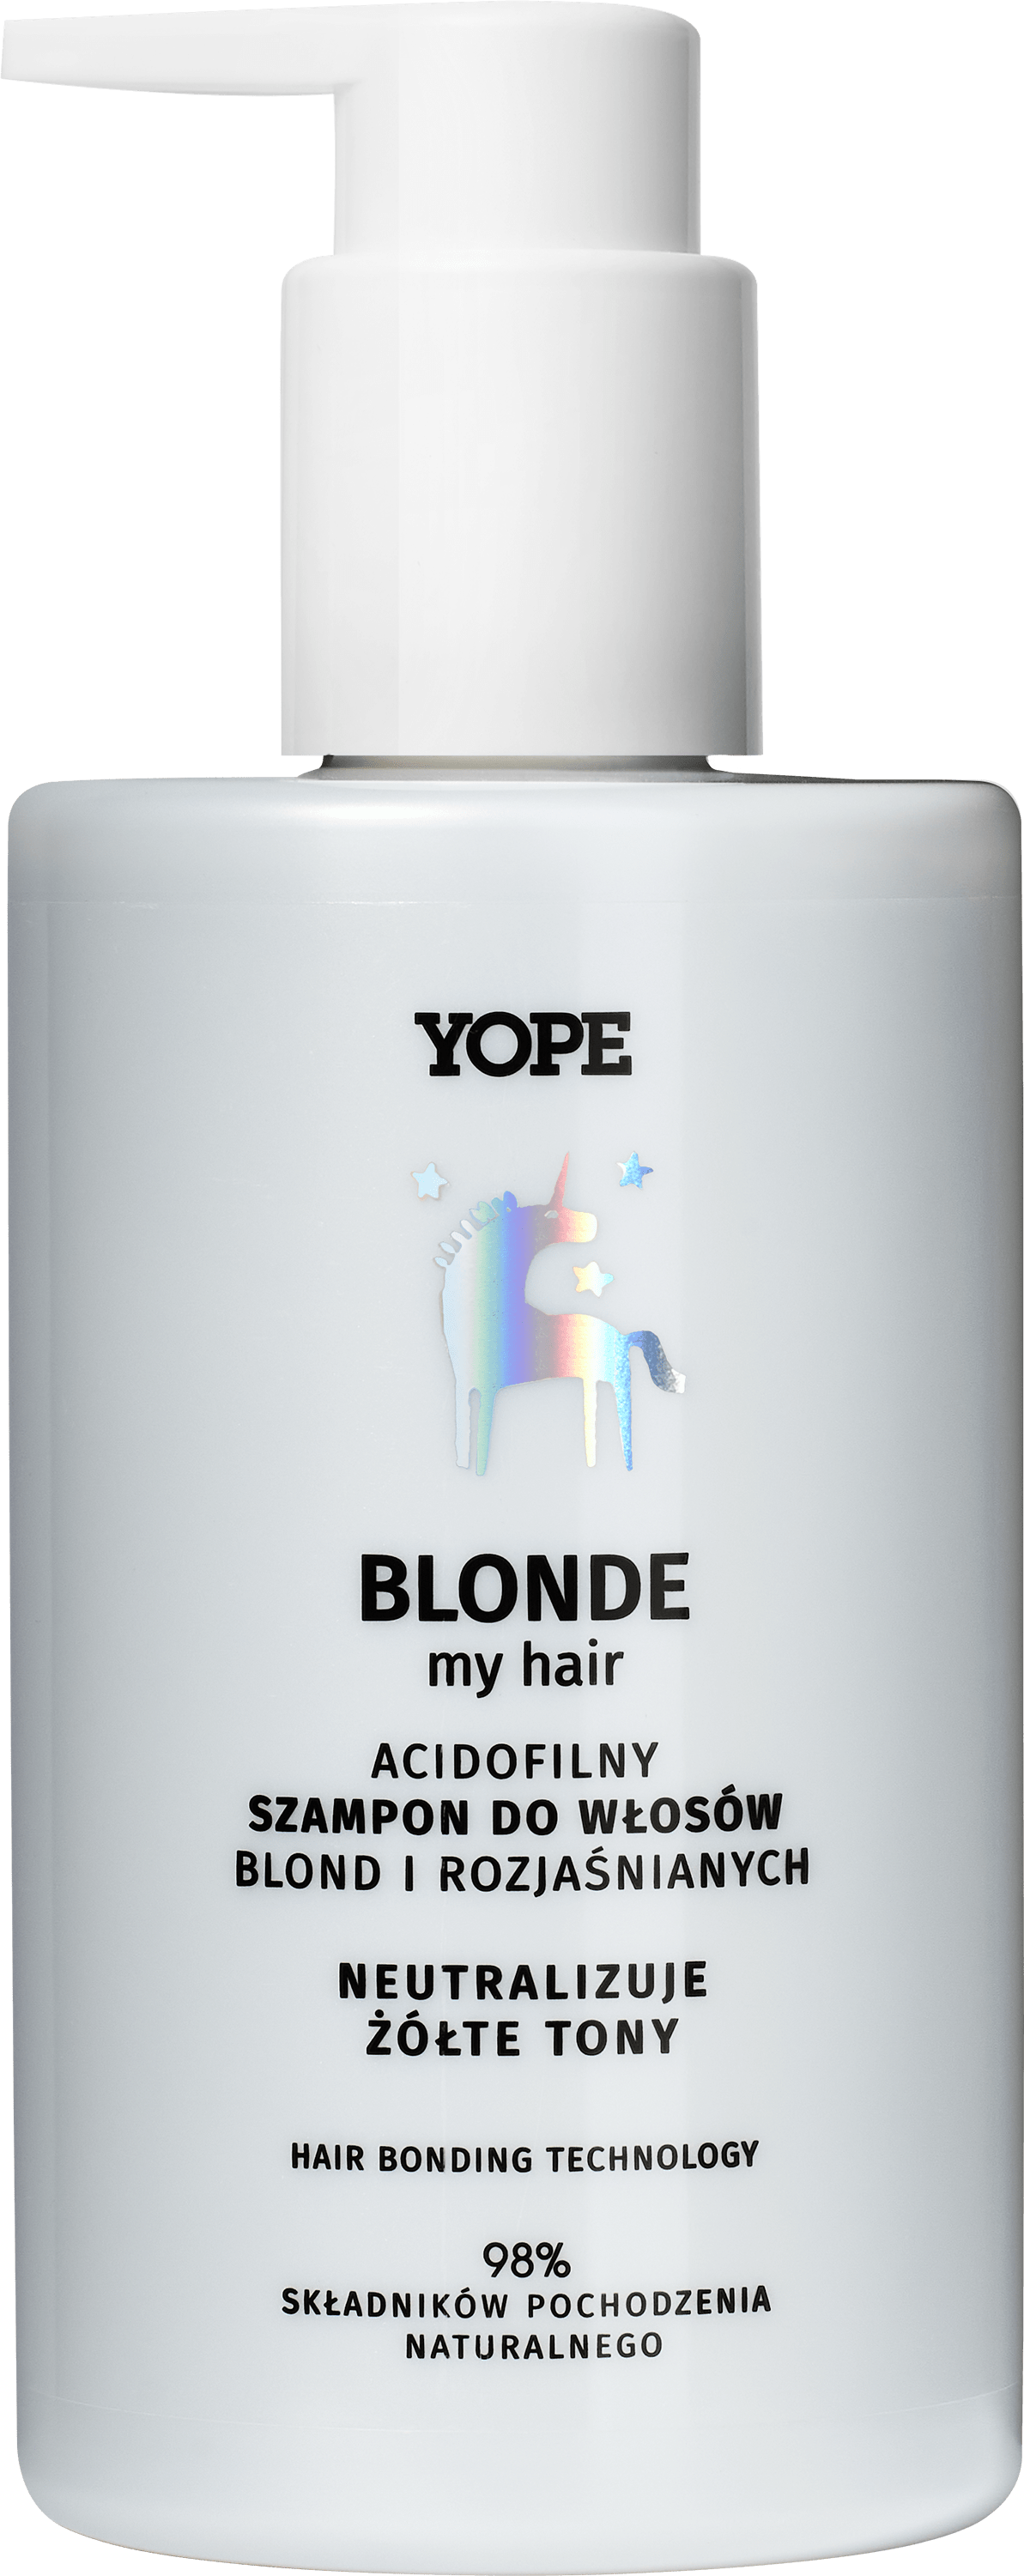 wizaz szampon do wlosow blond